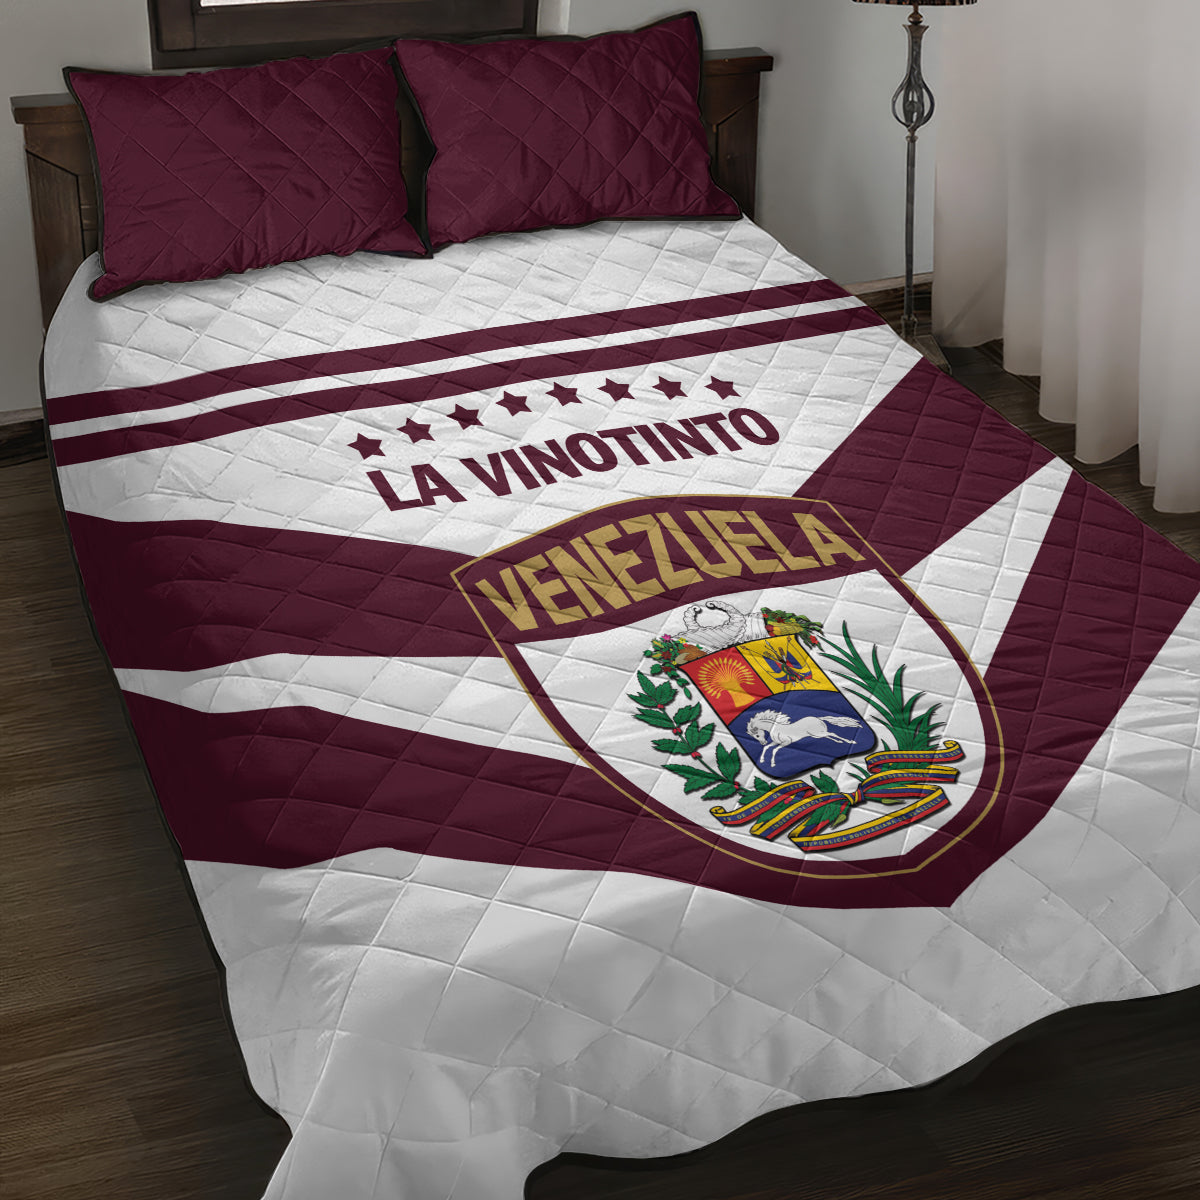 Venezuela 2024 Football Quilt Bed Set Mano tengo fe La Vinotinto